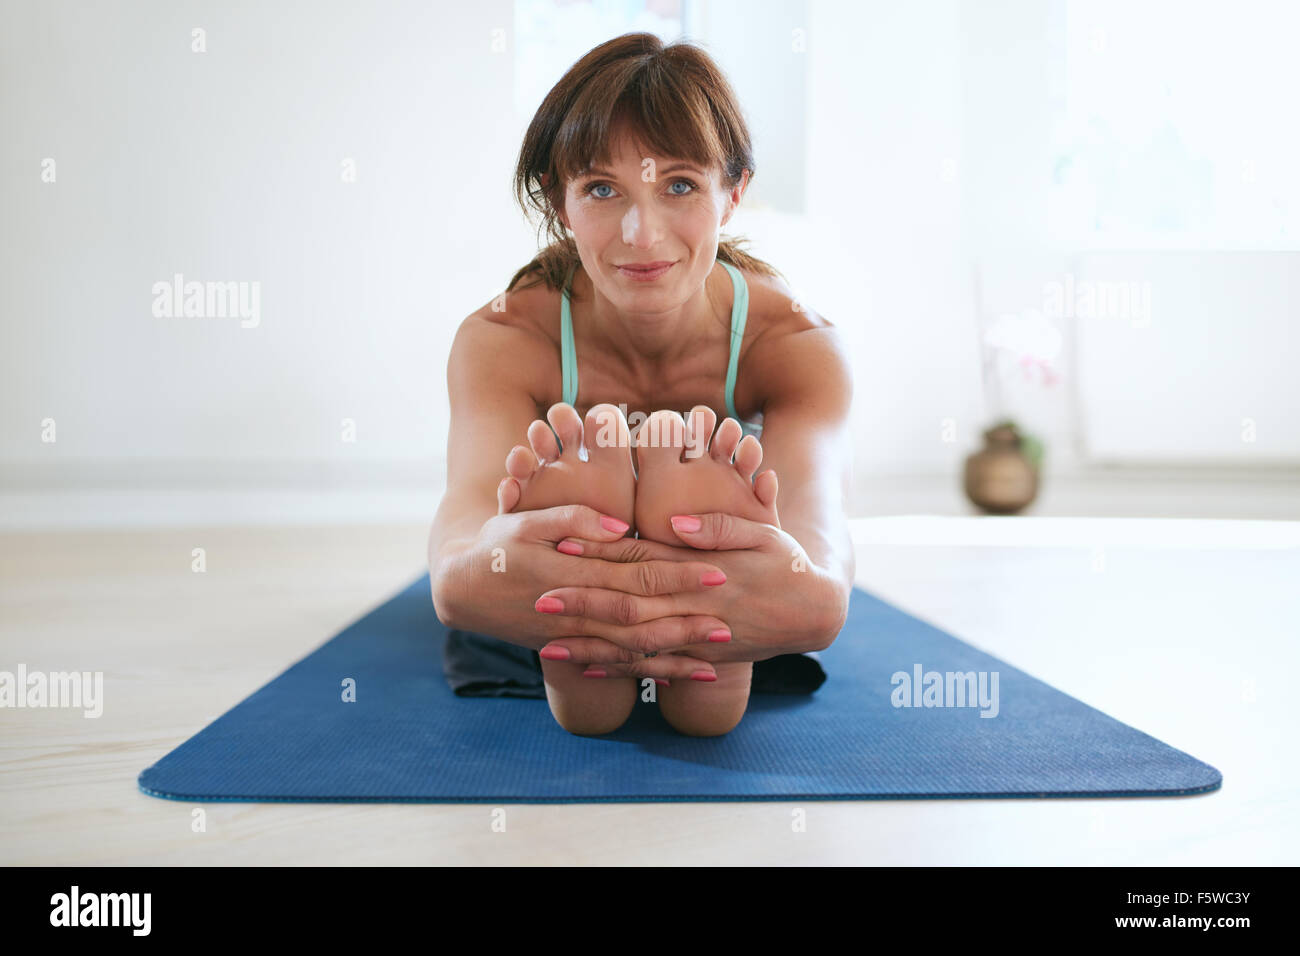 Frau im sitzen nach vorne beugen Yoga Pose halten Füße. Fitness-Trainer üben Paschimottanasana Yoga Training im Fitness-Studio. Stockfoto